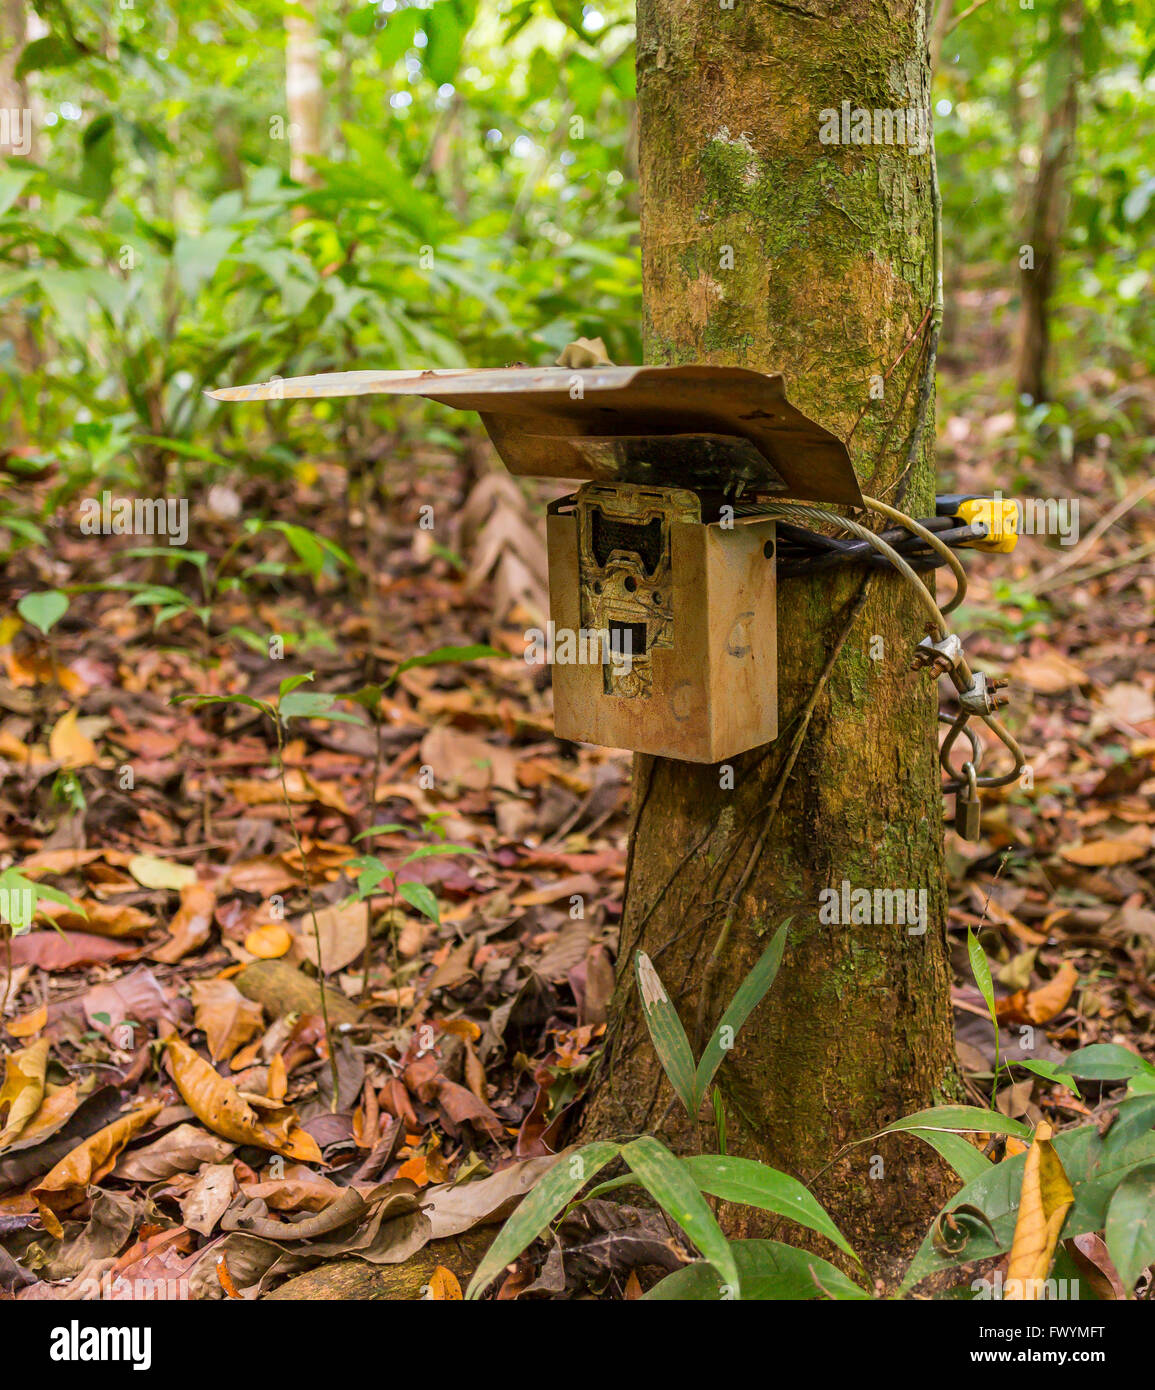 Camera trap tree immagini e fotografie stock ad alta risoluzione - Alamy